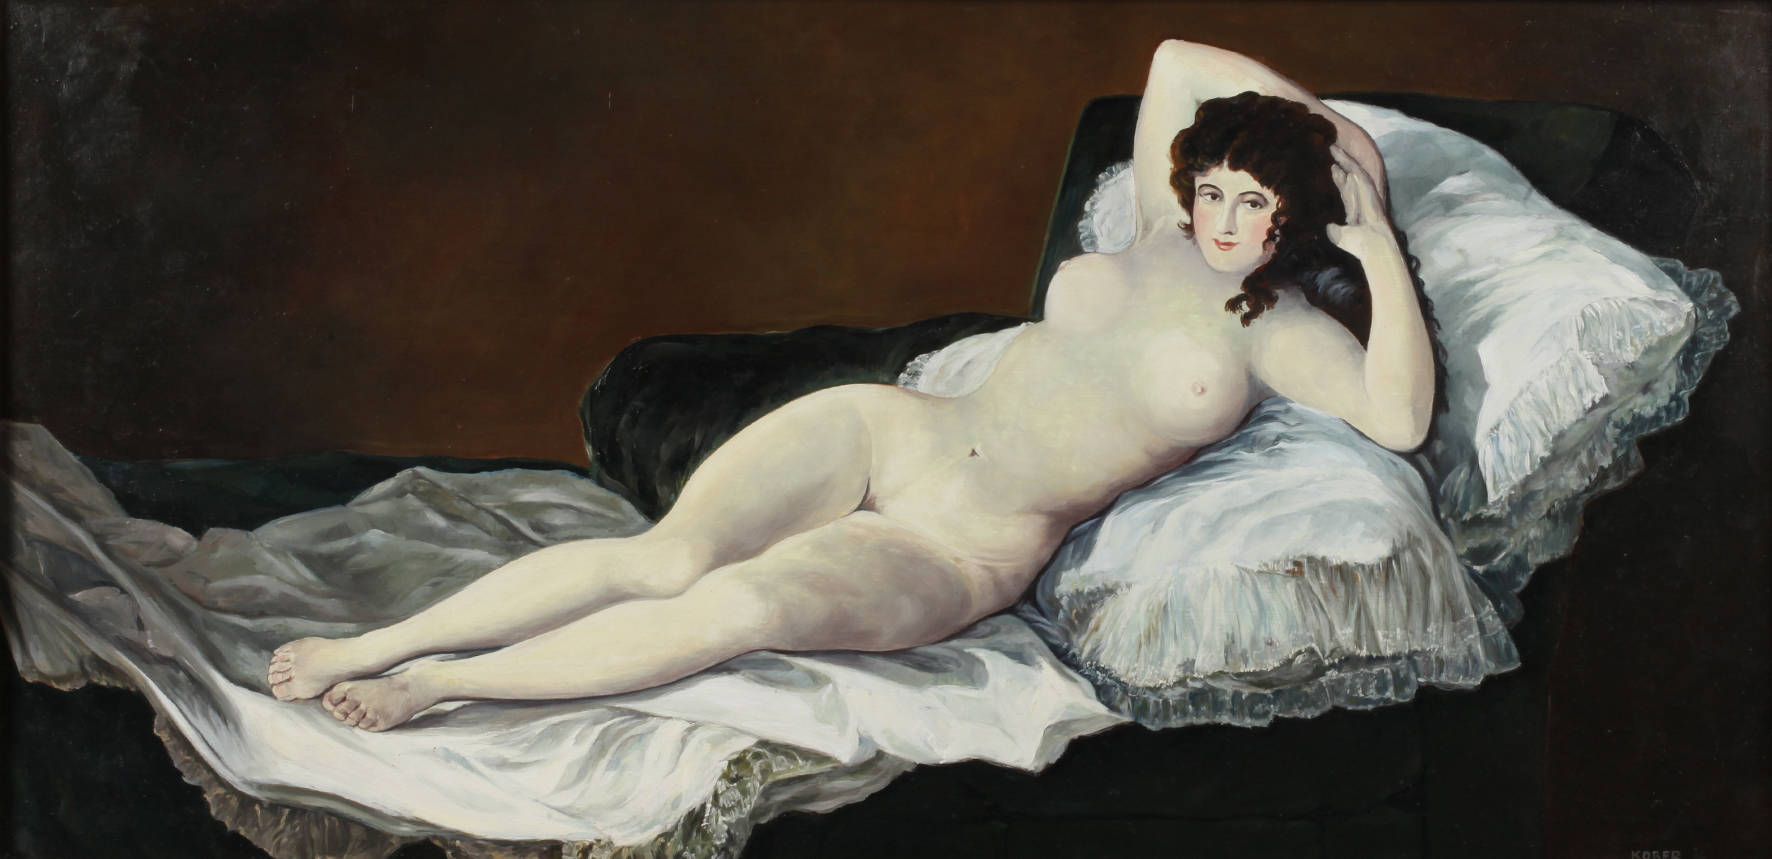 Paul Kober, ”Die nackte Maja” nach Goya